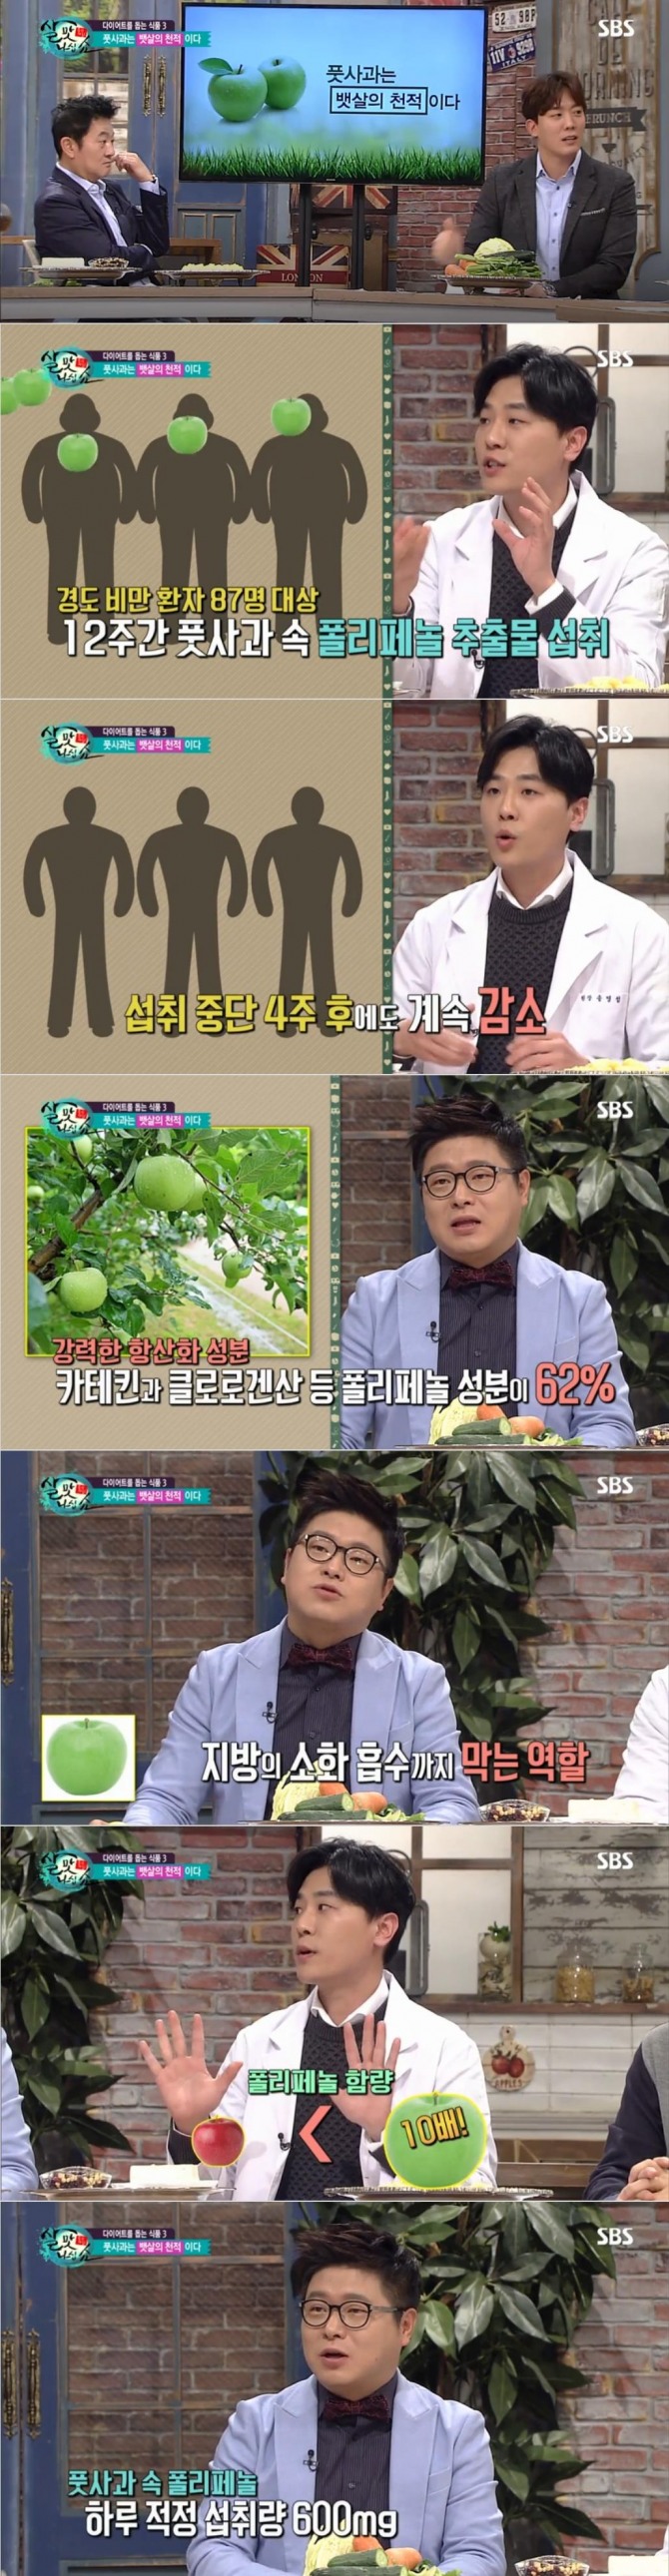 31일 방송된 SBS '좋은 아침'에서는 풋사과가 뱃살을 빼는데 효과적이라고 소개됐다./사진=SBS 방송 캡처